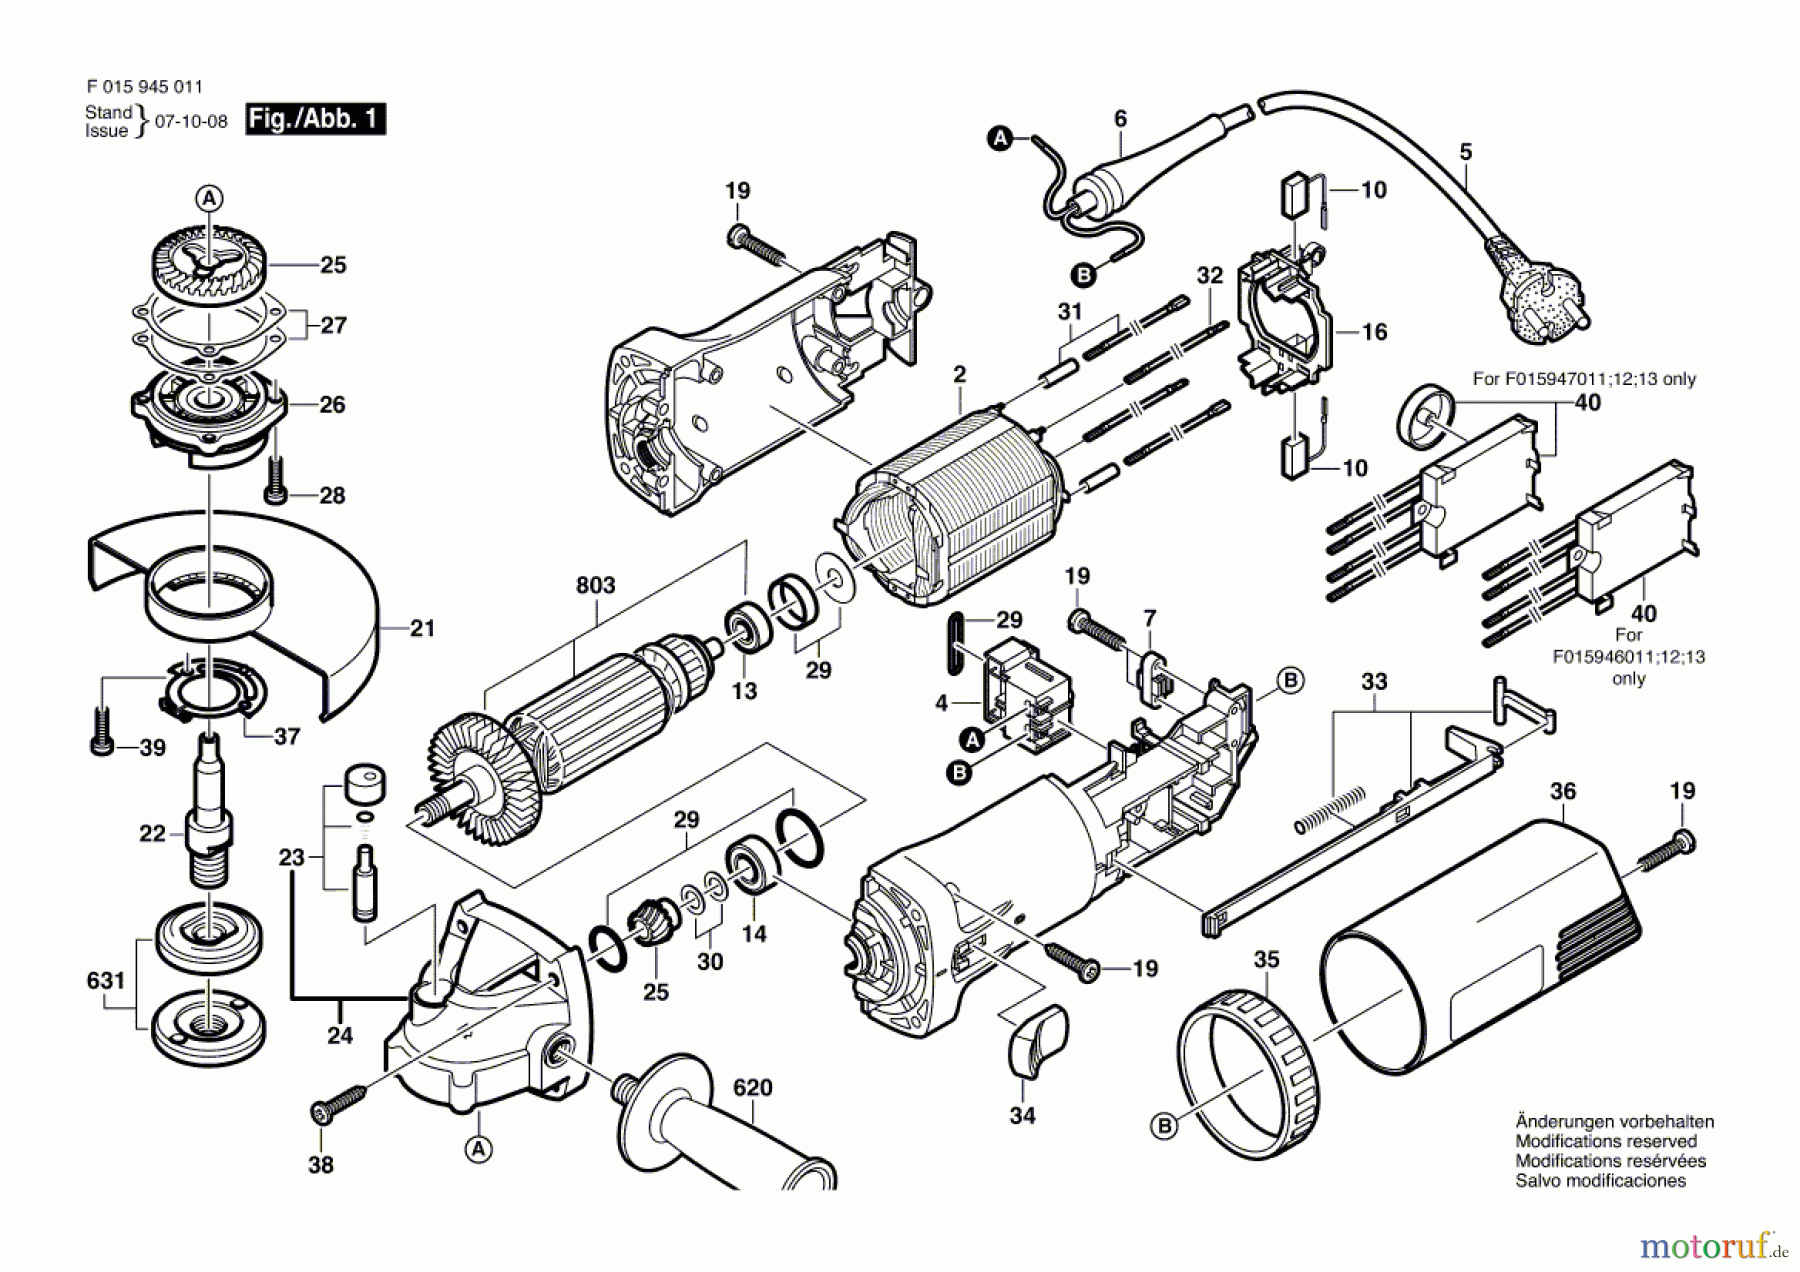  Bosch Werkzeug Winkelschleifer 9450 Seite 1